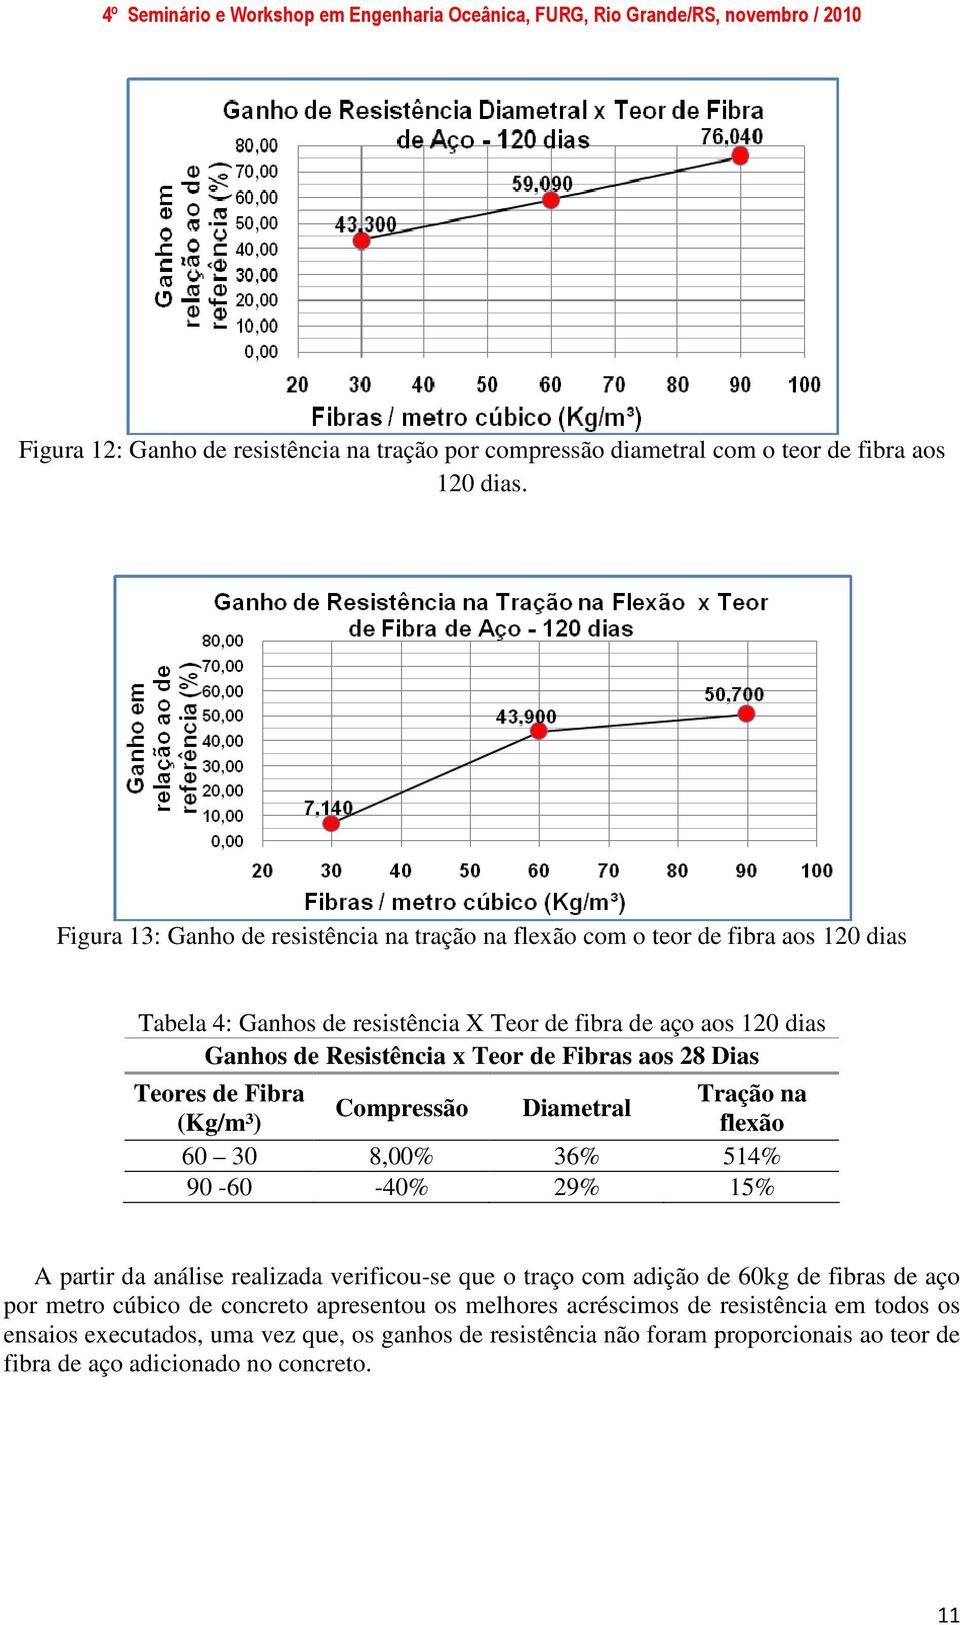 Teor de Fibras aos 28 Dias Teores de Fibra (Kg/m³) Compressão Diametral Tração na flexão 60 30 8,00% 36% 514% 90-60 -40% 29% 15% A partir da análise realizada verificou-se que o